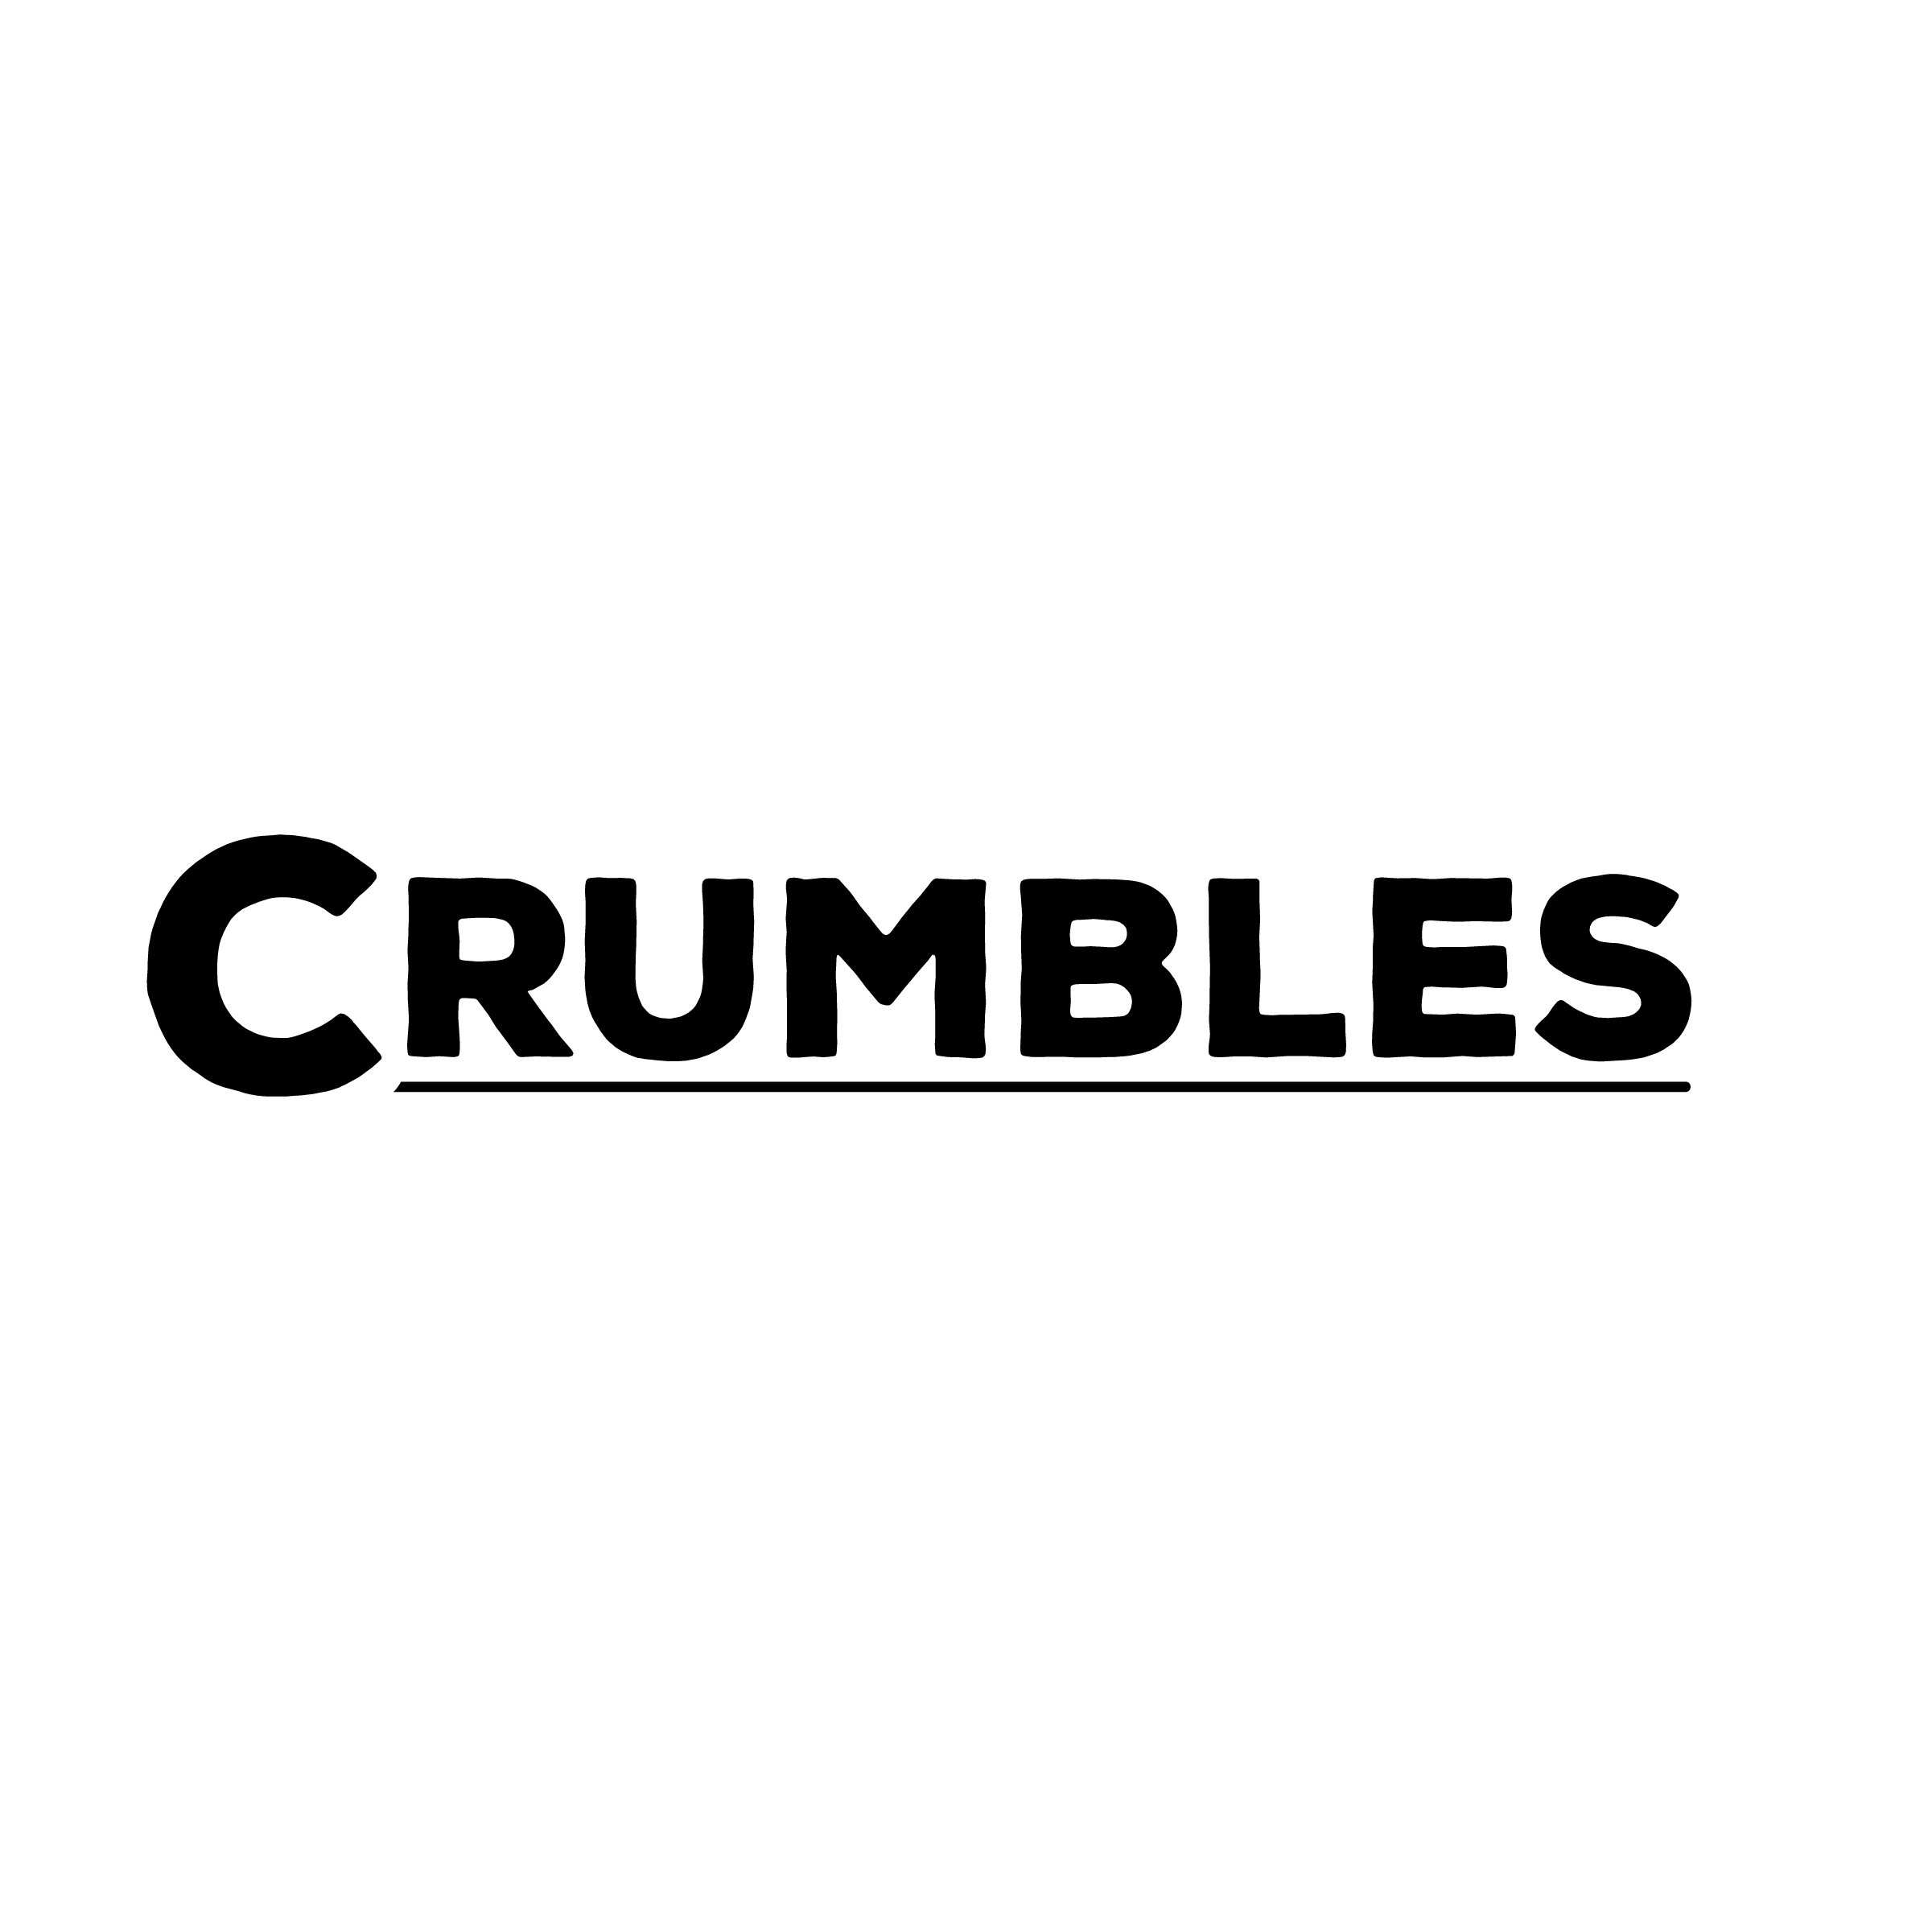  CRUMBLES